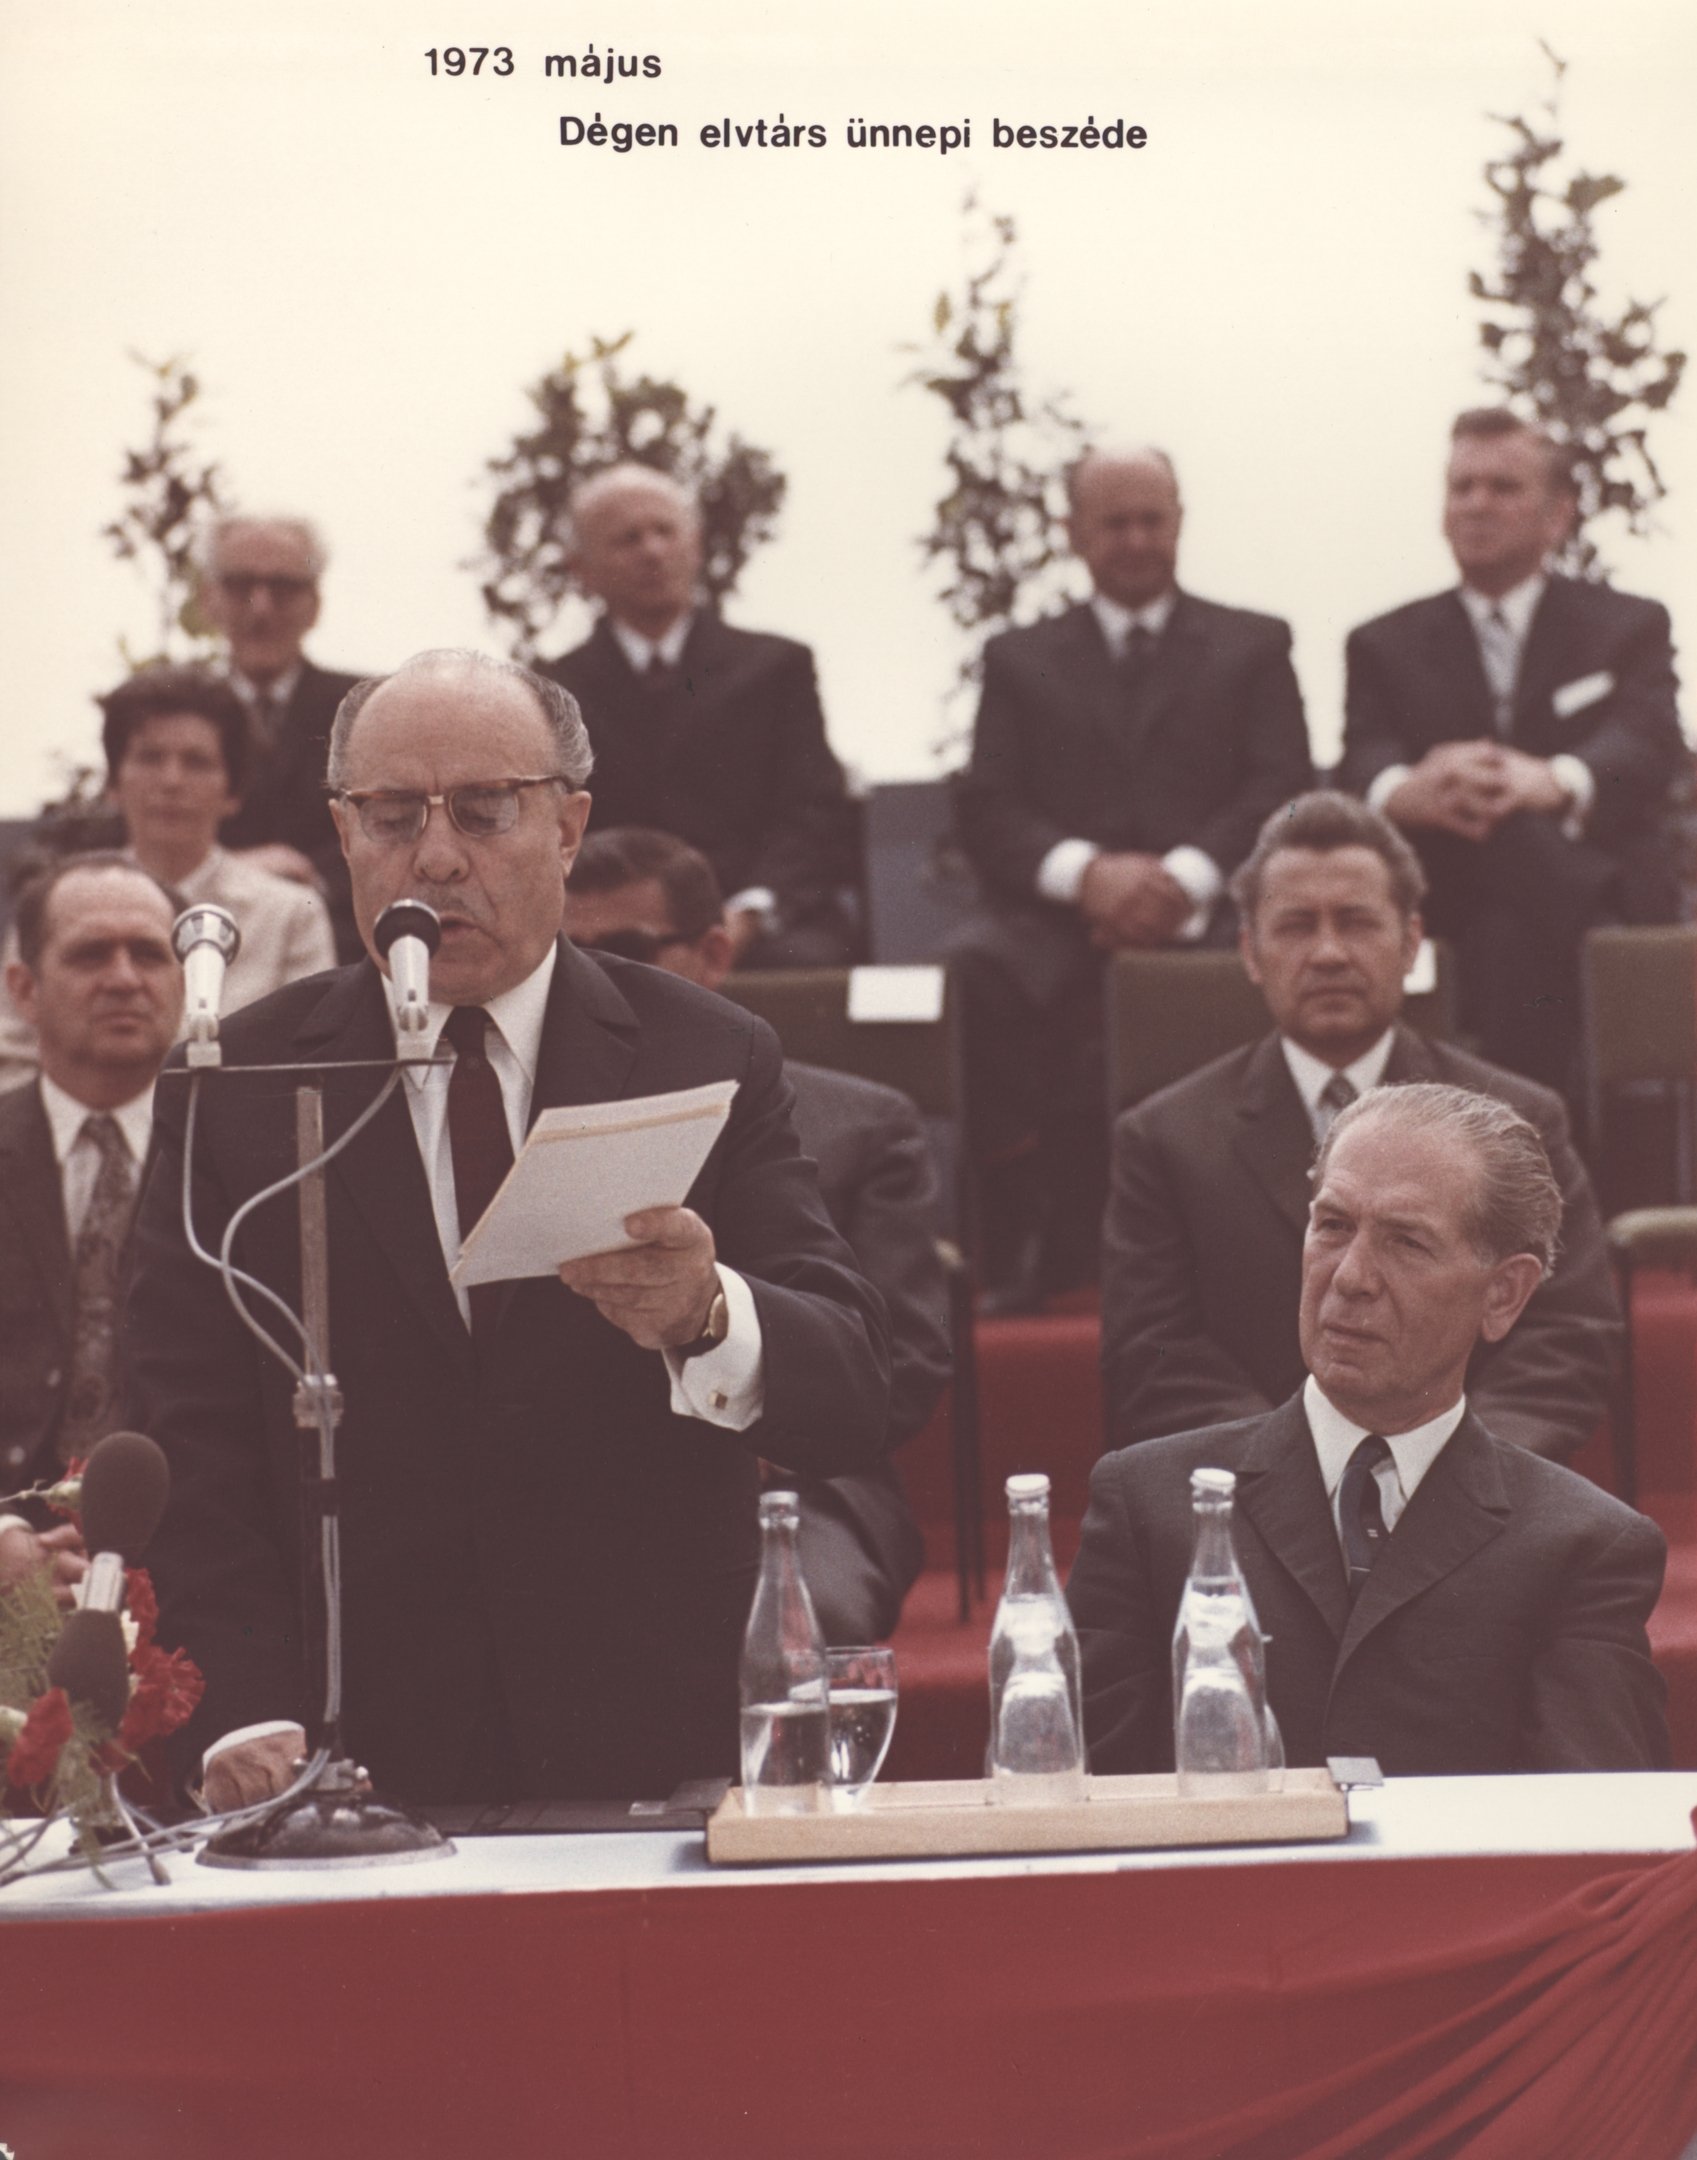 Dégen elvtárs ünnepi beszéde, 1973. május (Magyar Környezetvédelmi és Vízügyi Múzeum - Duna Múzeum CC BY-NC-SA)